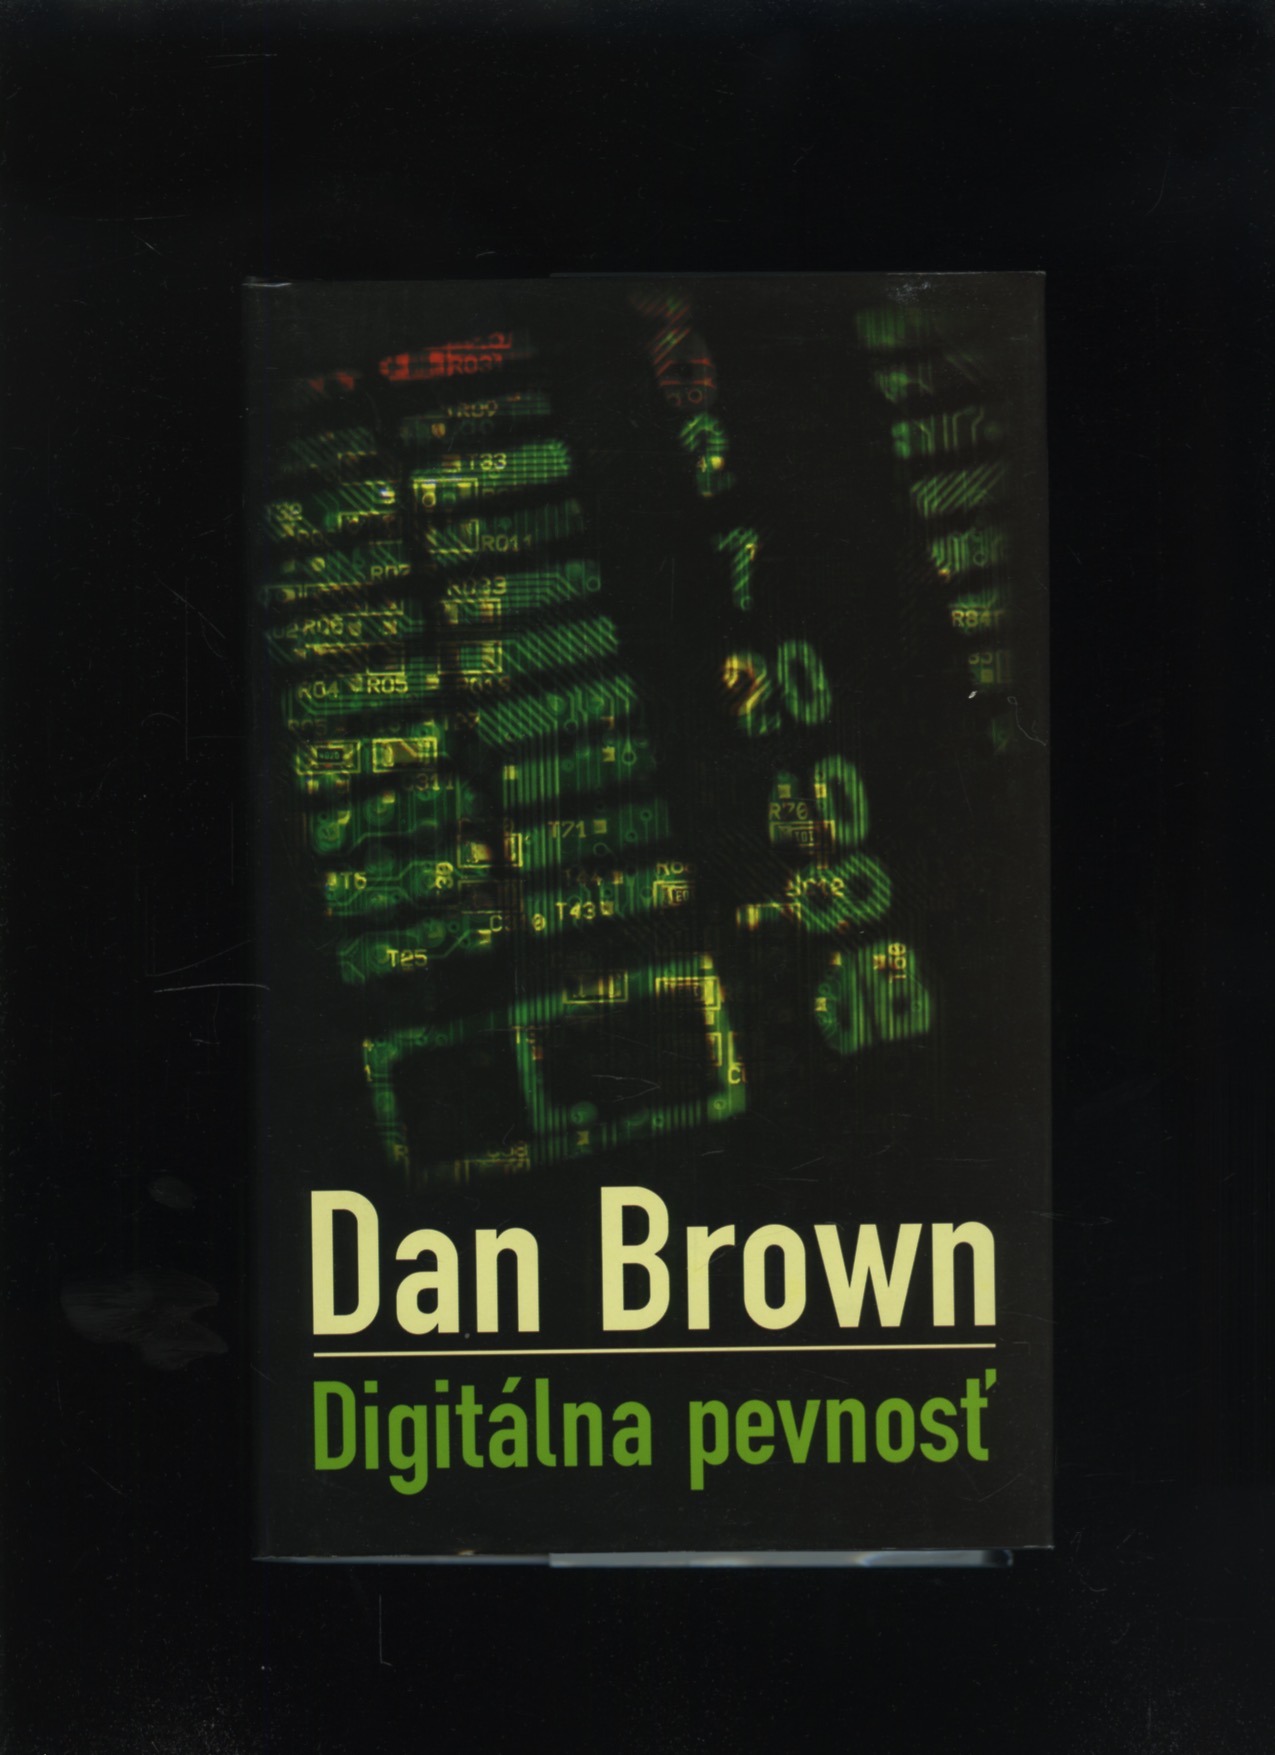 Digitálna pevnosť (Dan Brown)